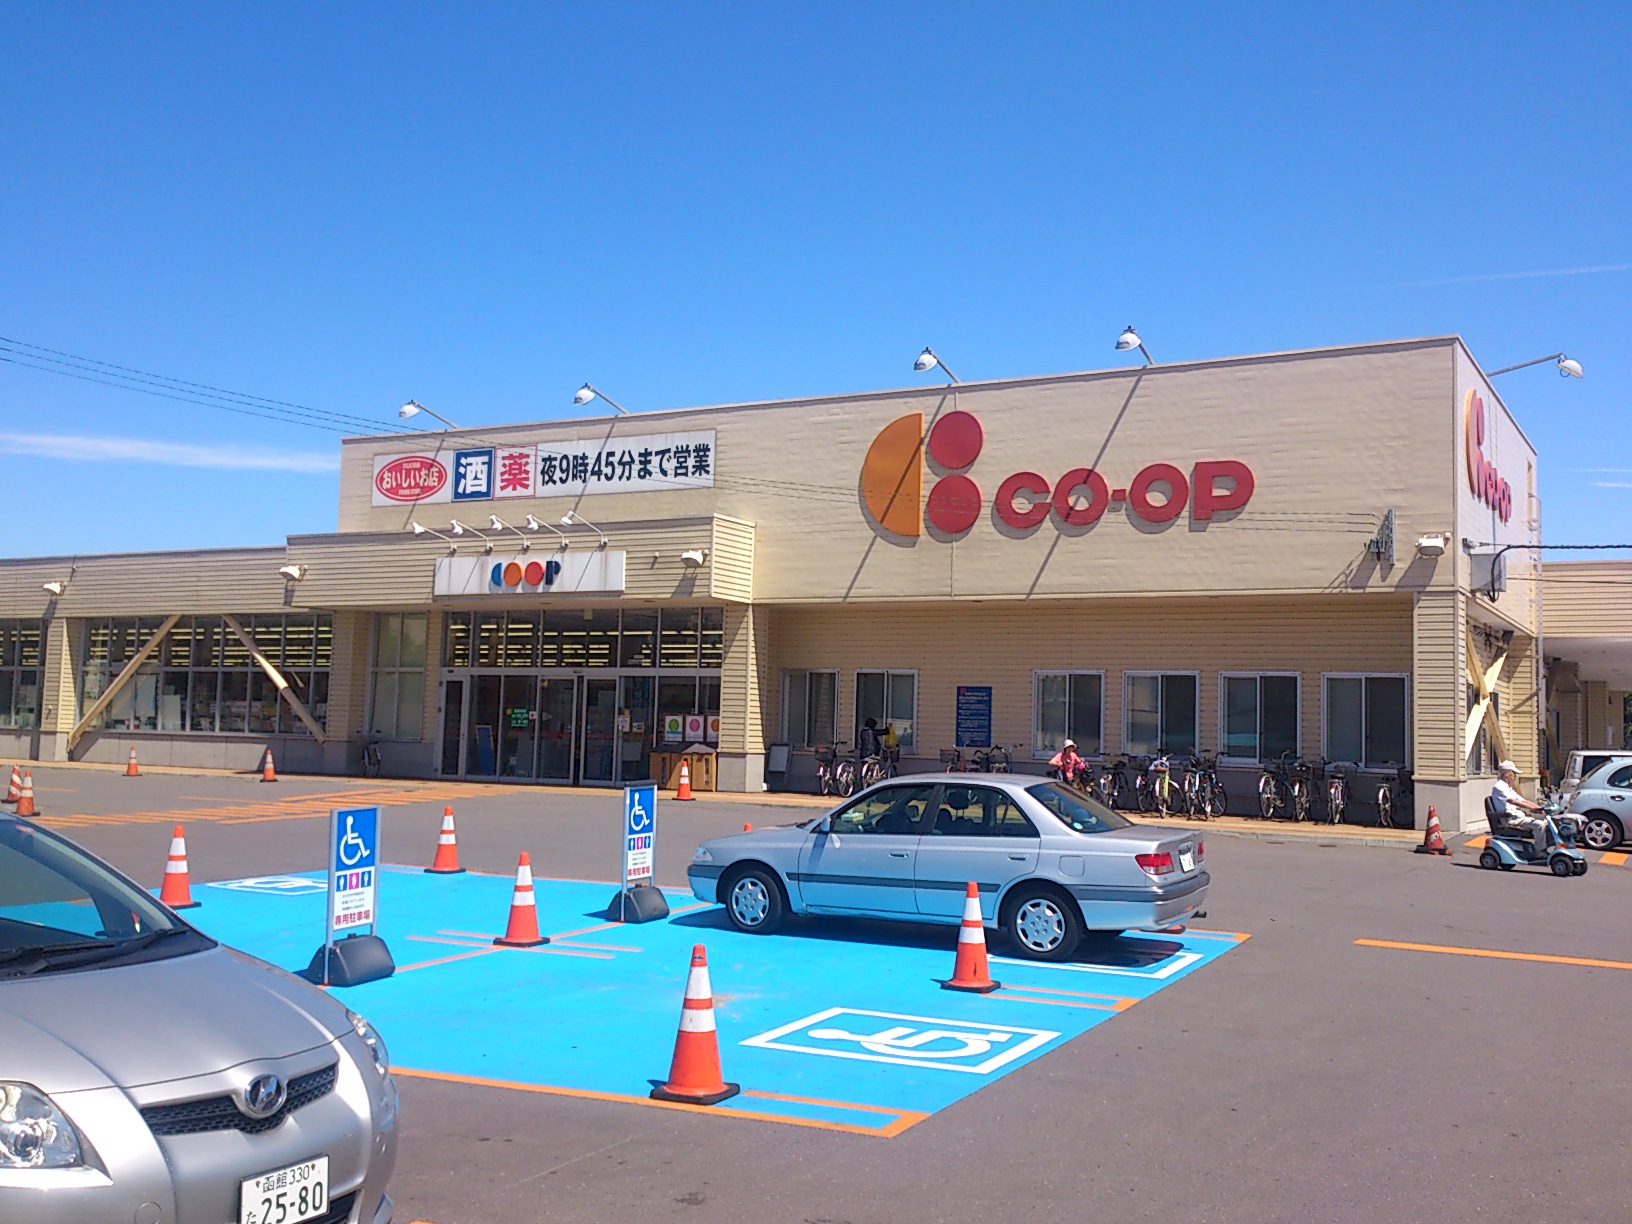 Supermarket. KopuSapporo rudder store up to (super) 1115m